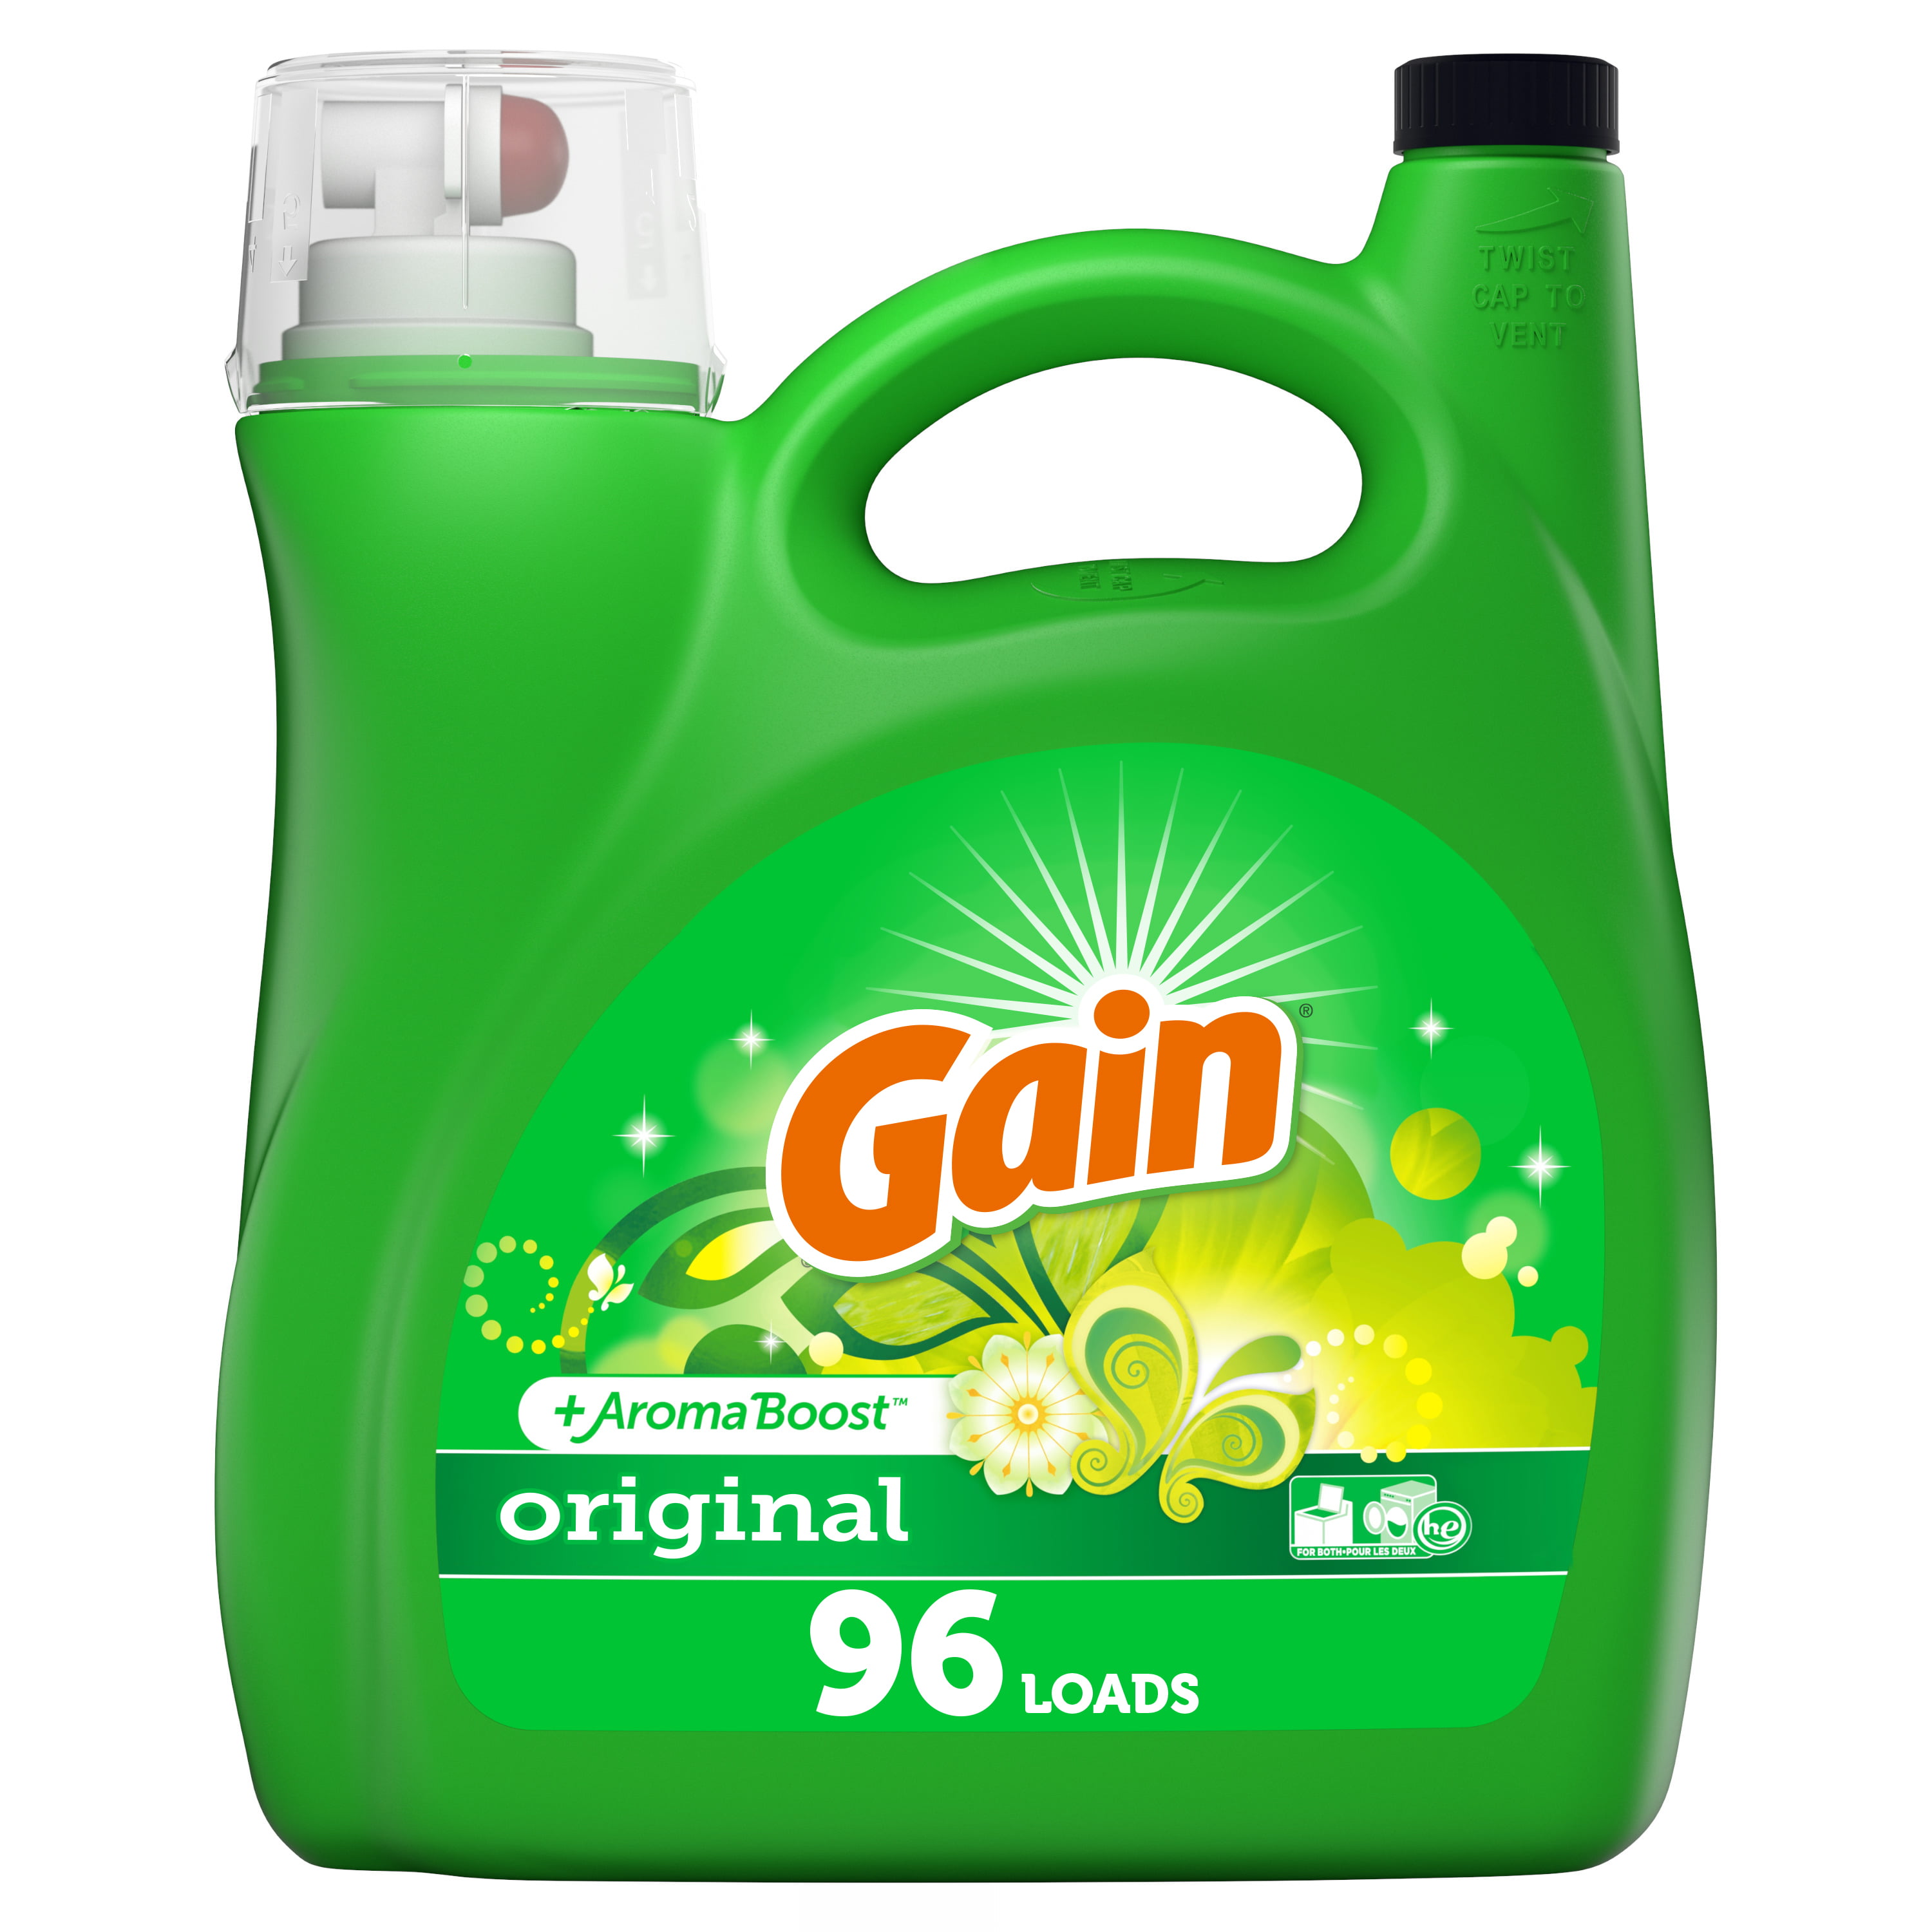 hd detergent brands